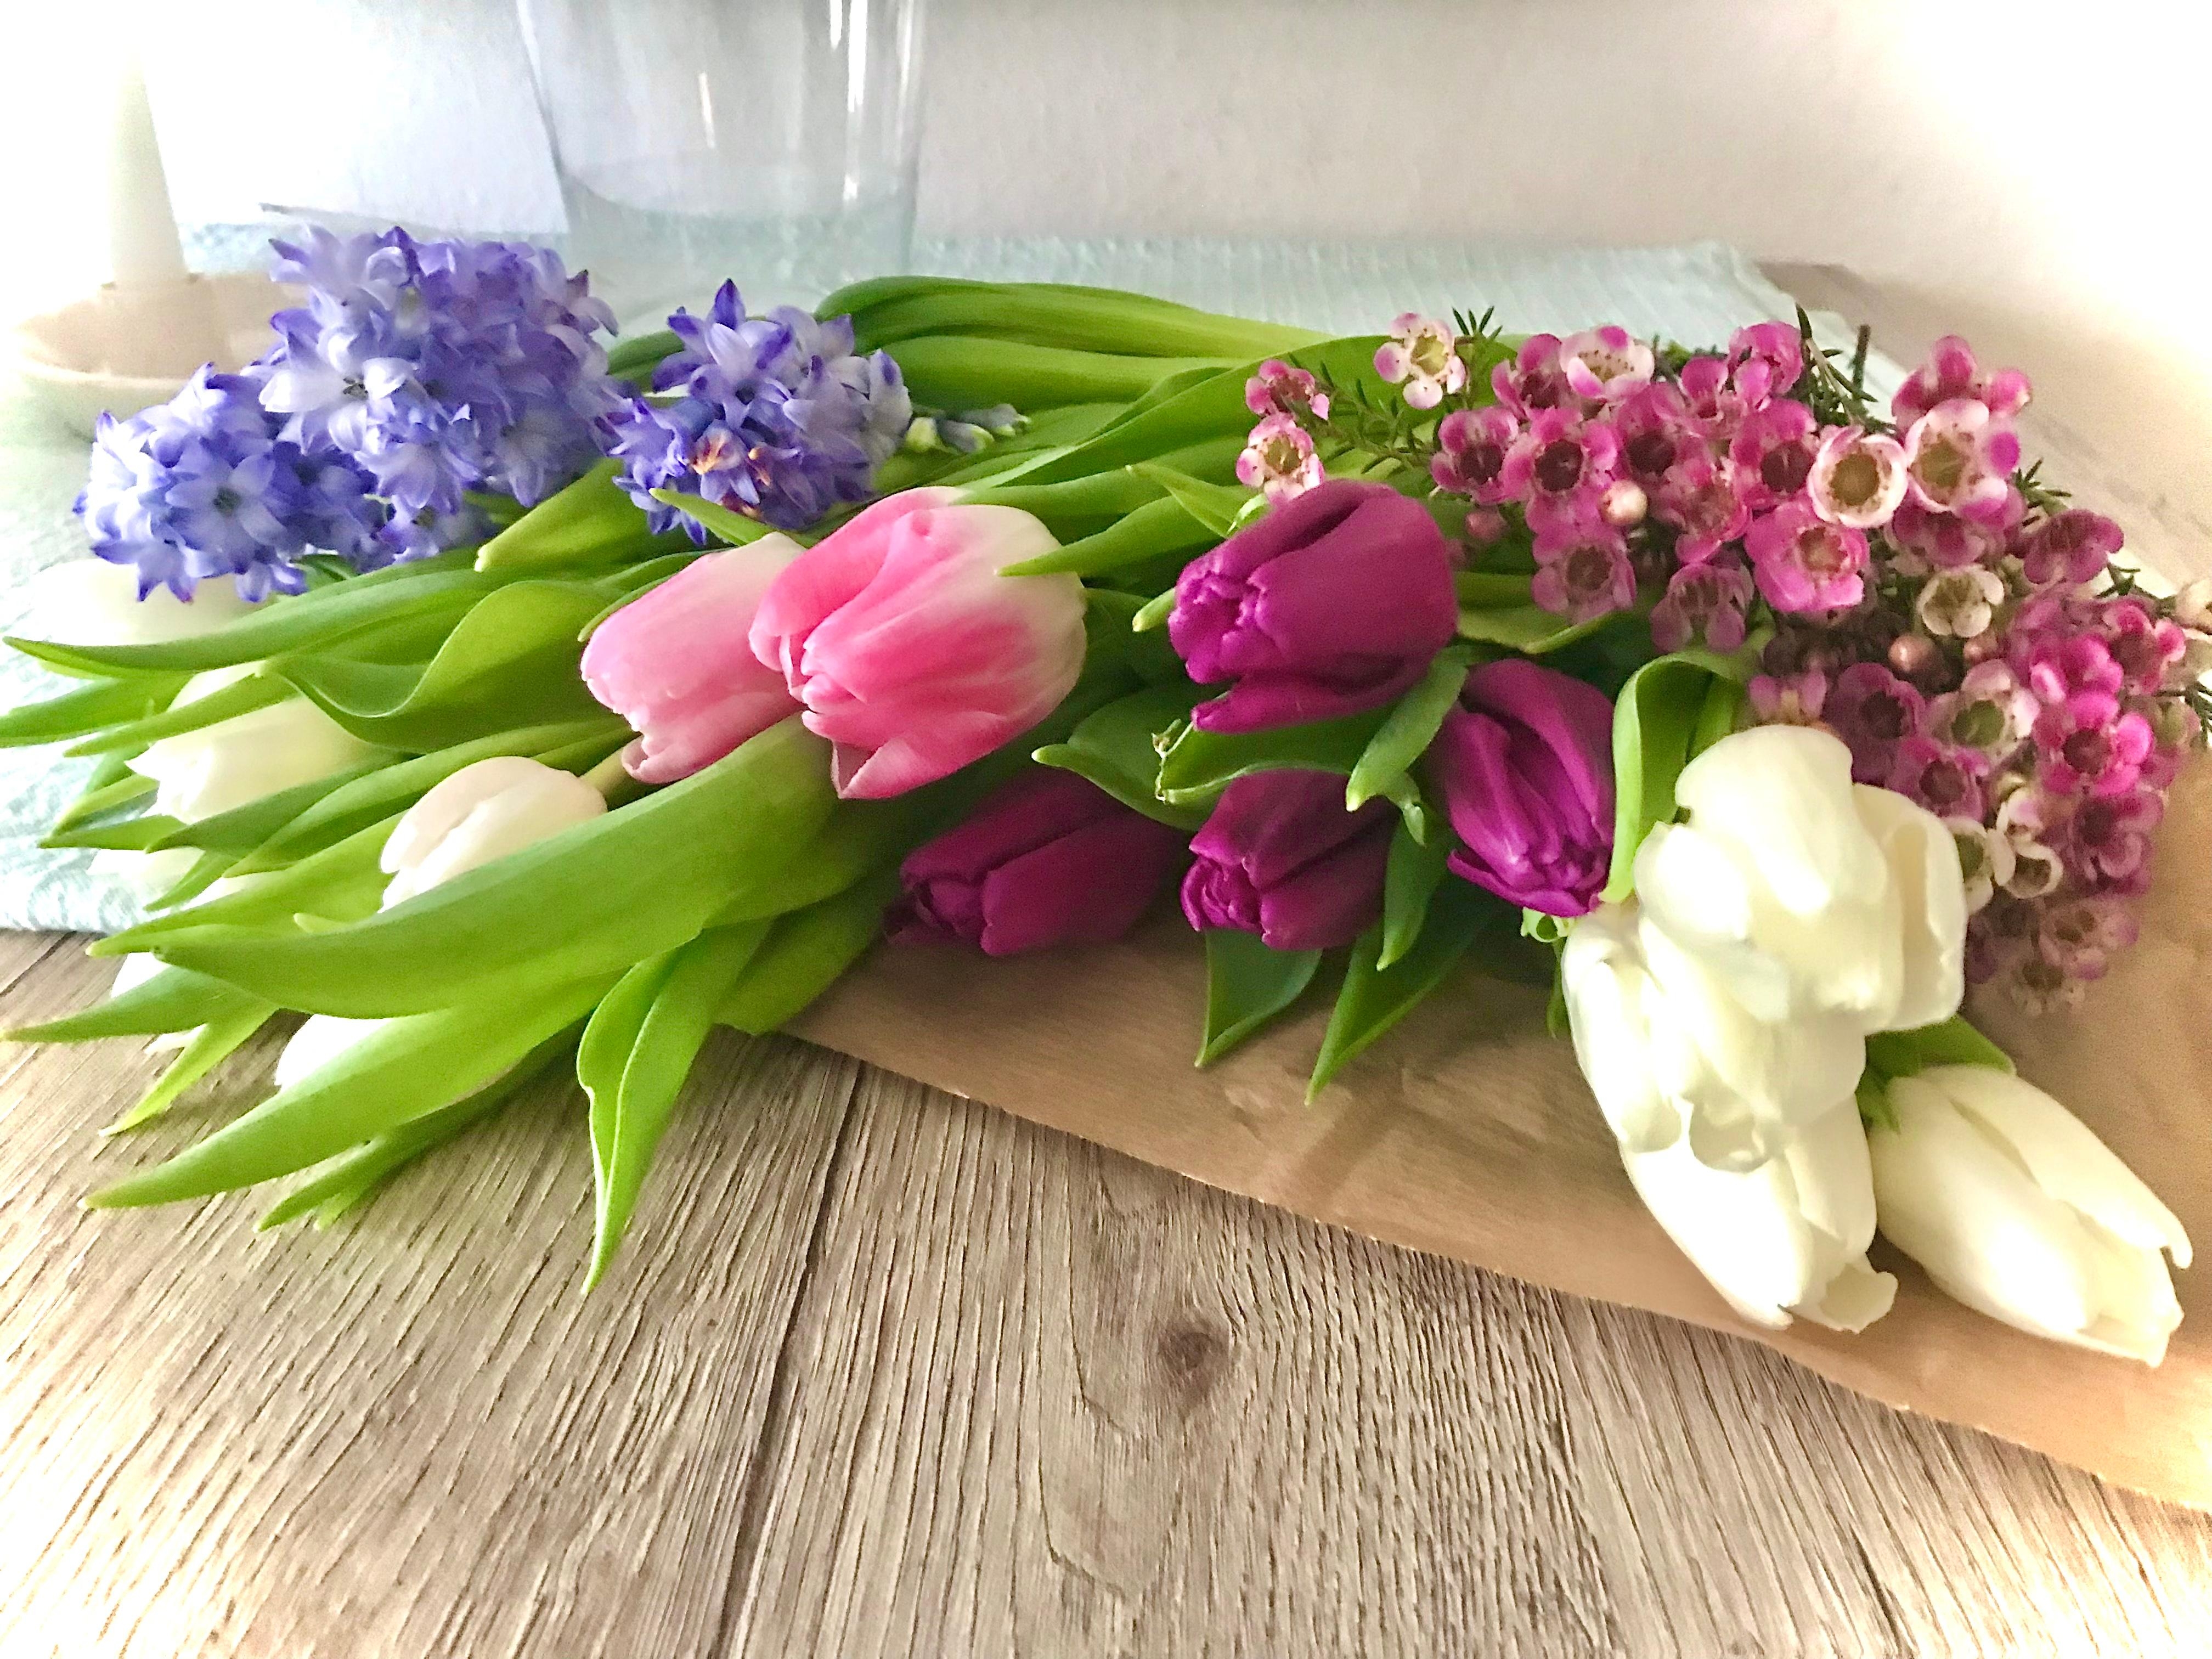 Blumen für die Vase 🌸
#flower #tulpen #tisch #vase 